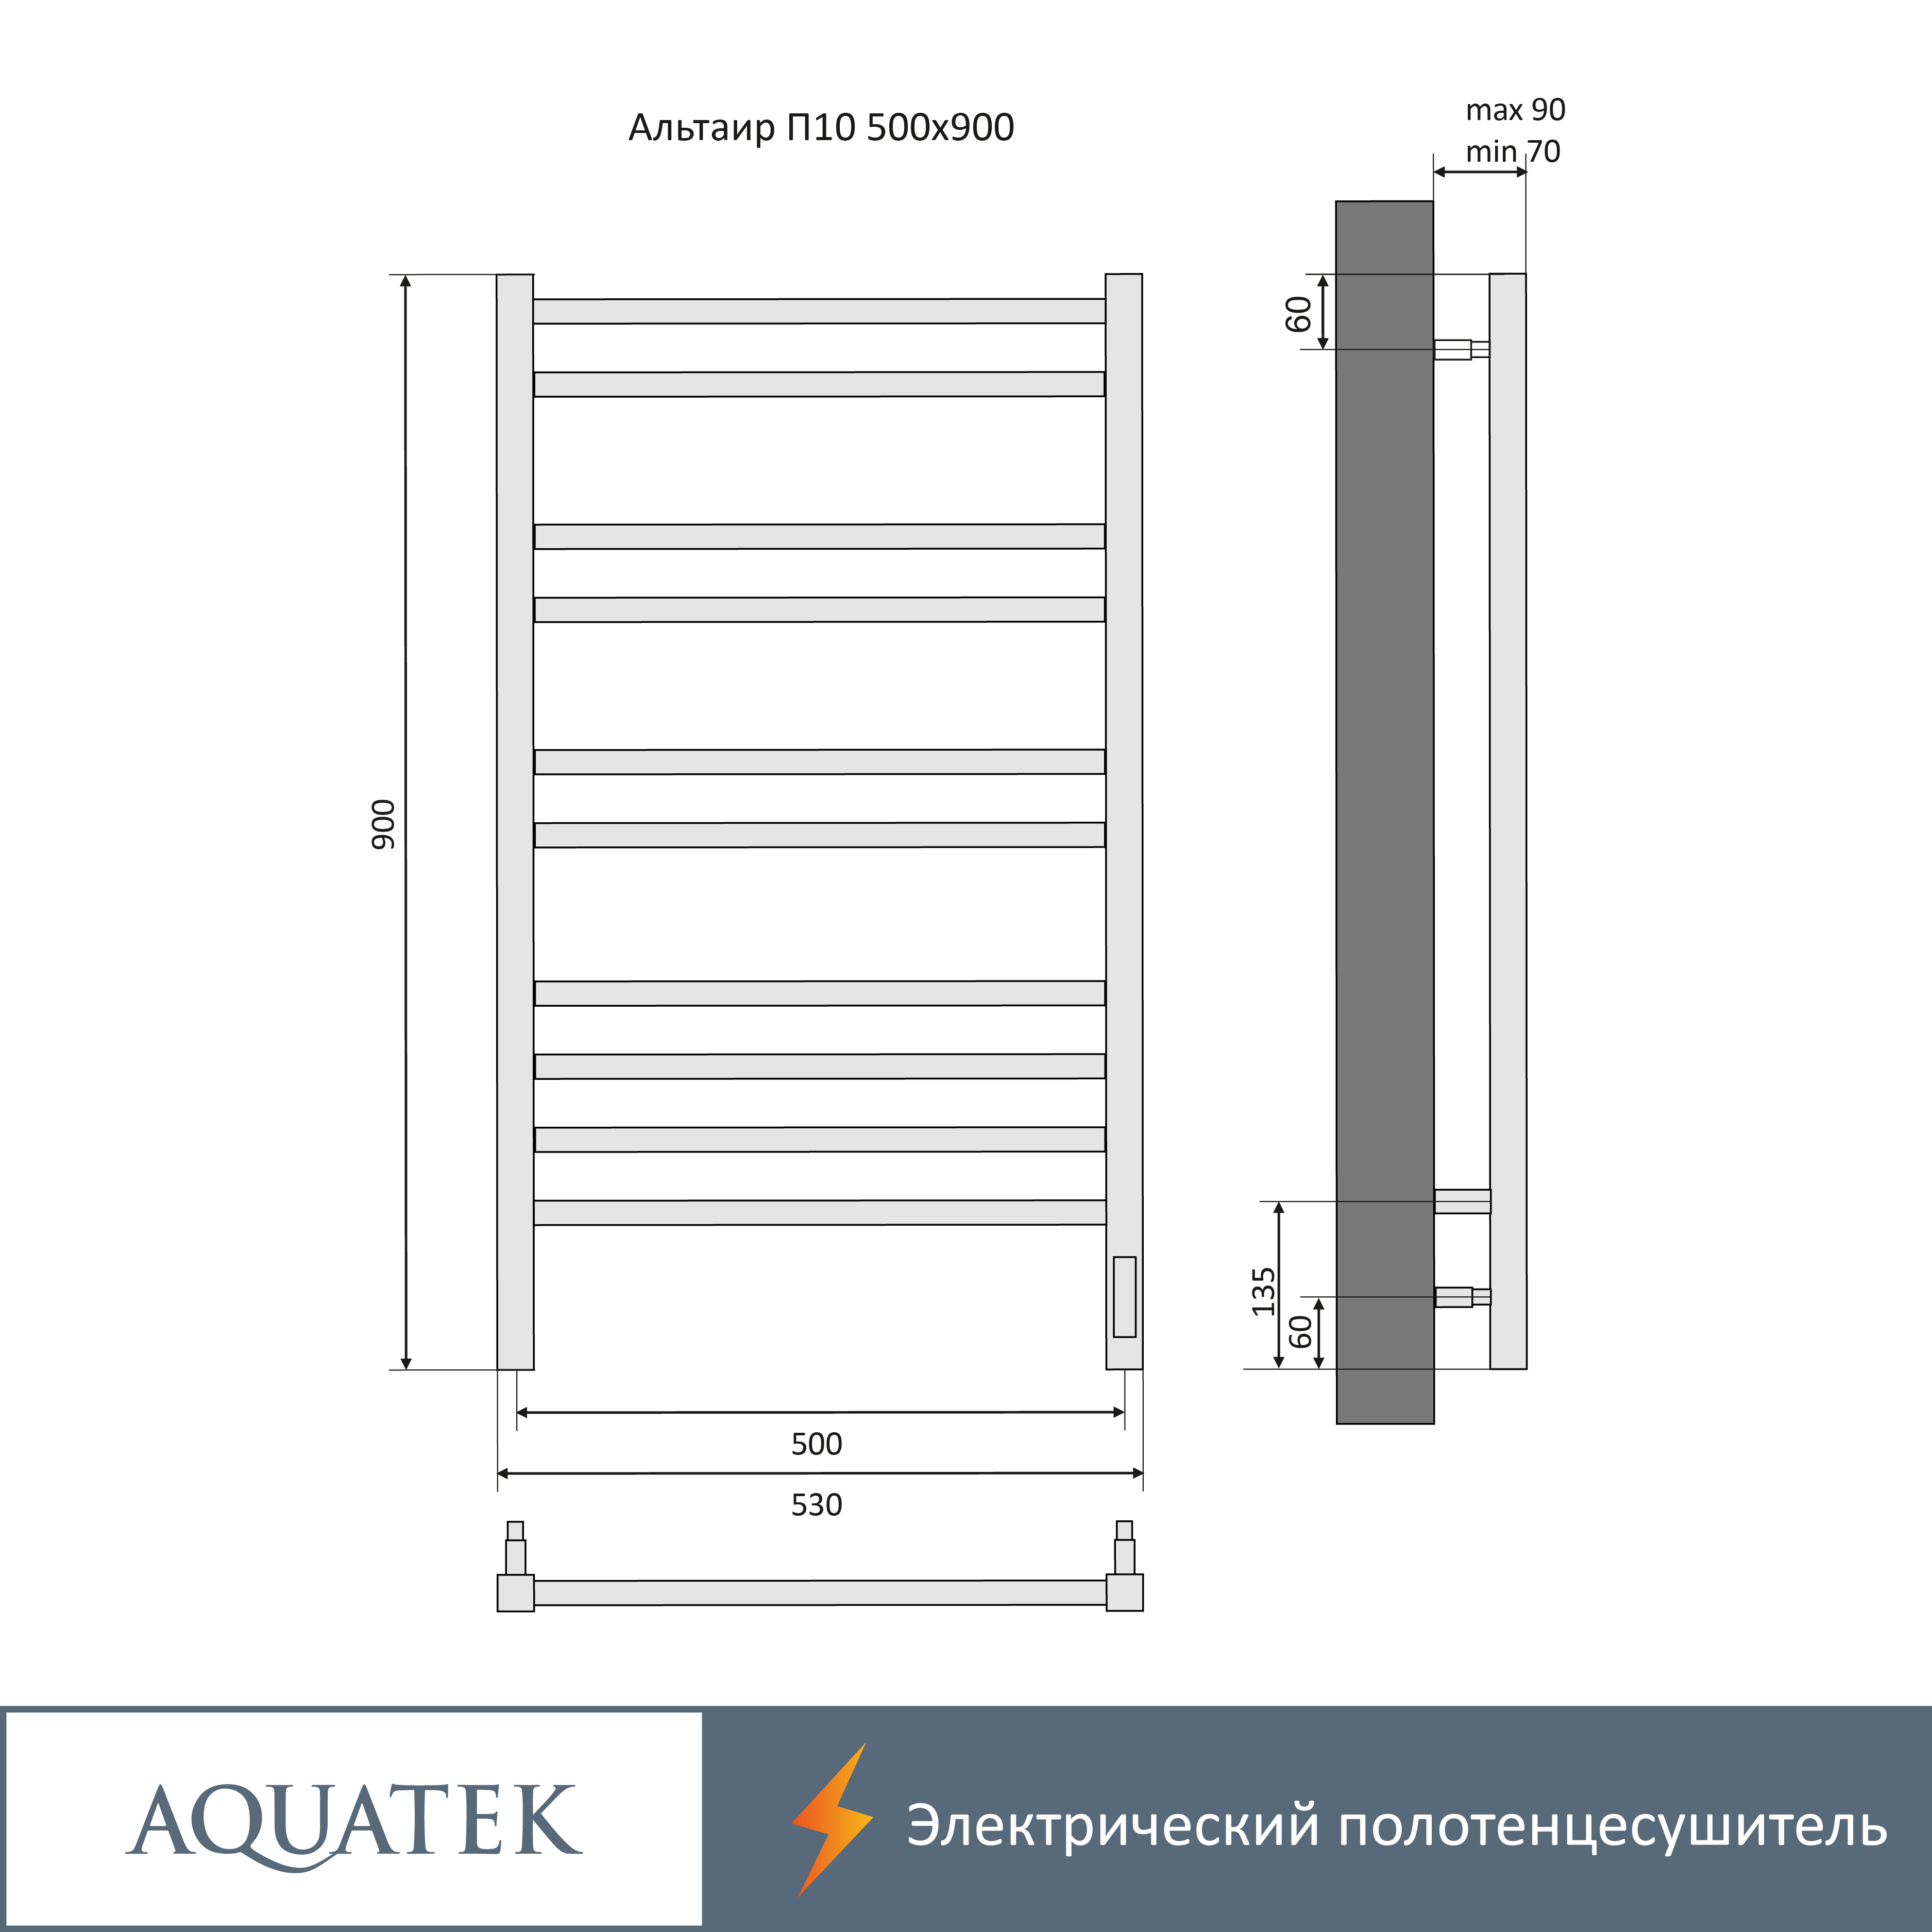 Полотенцесушитель электрический Aquatek Альтаир П10 500х900, quick touch, черный муар AQ EL KP1090BL - 18